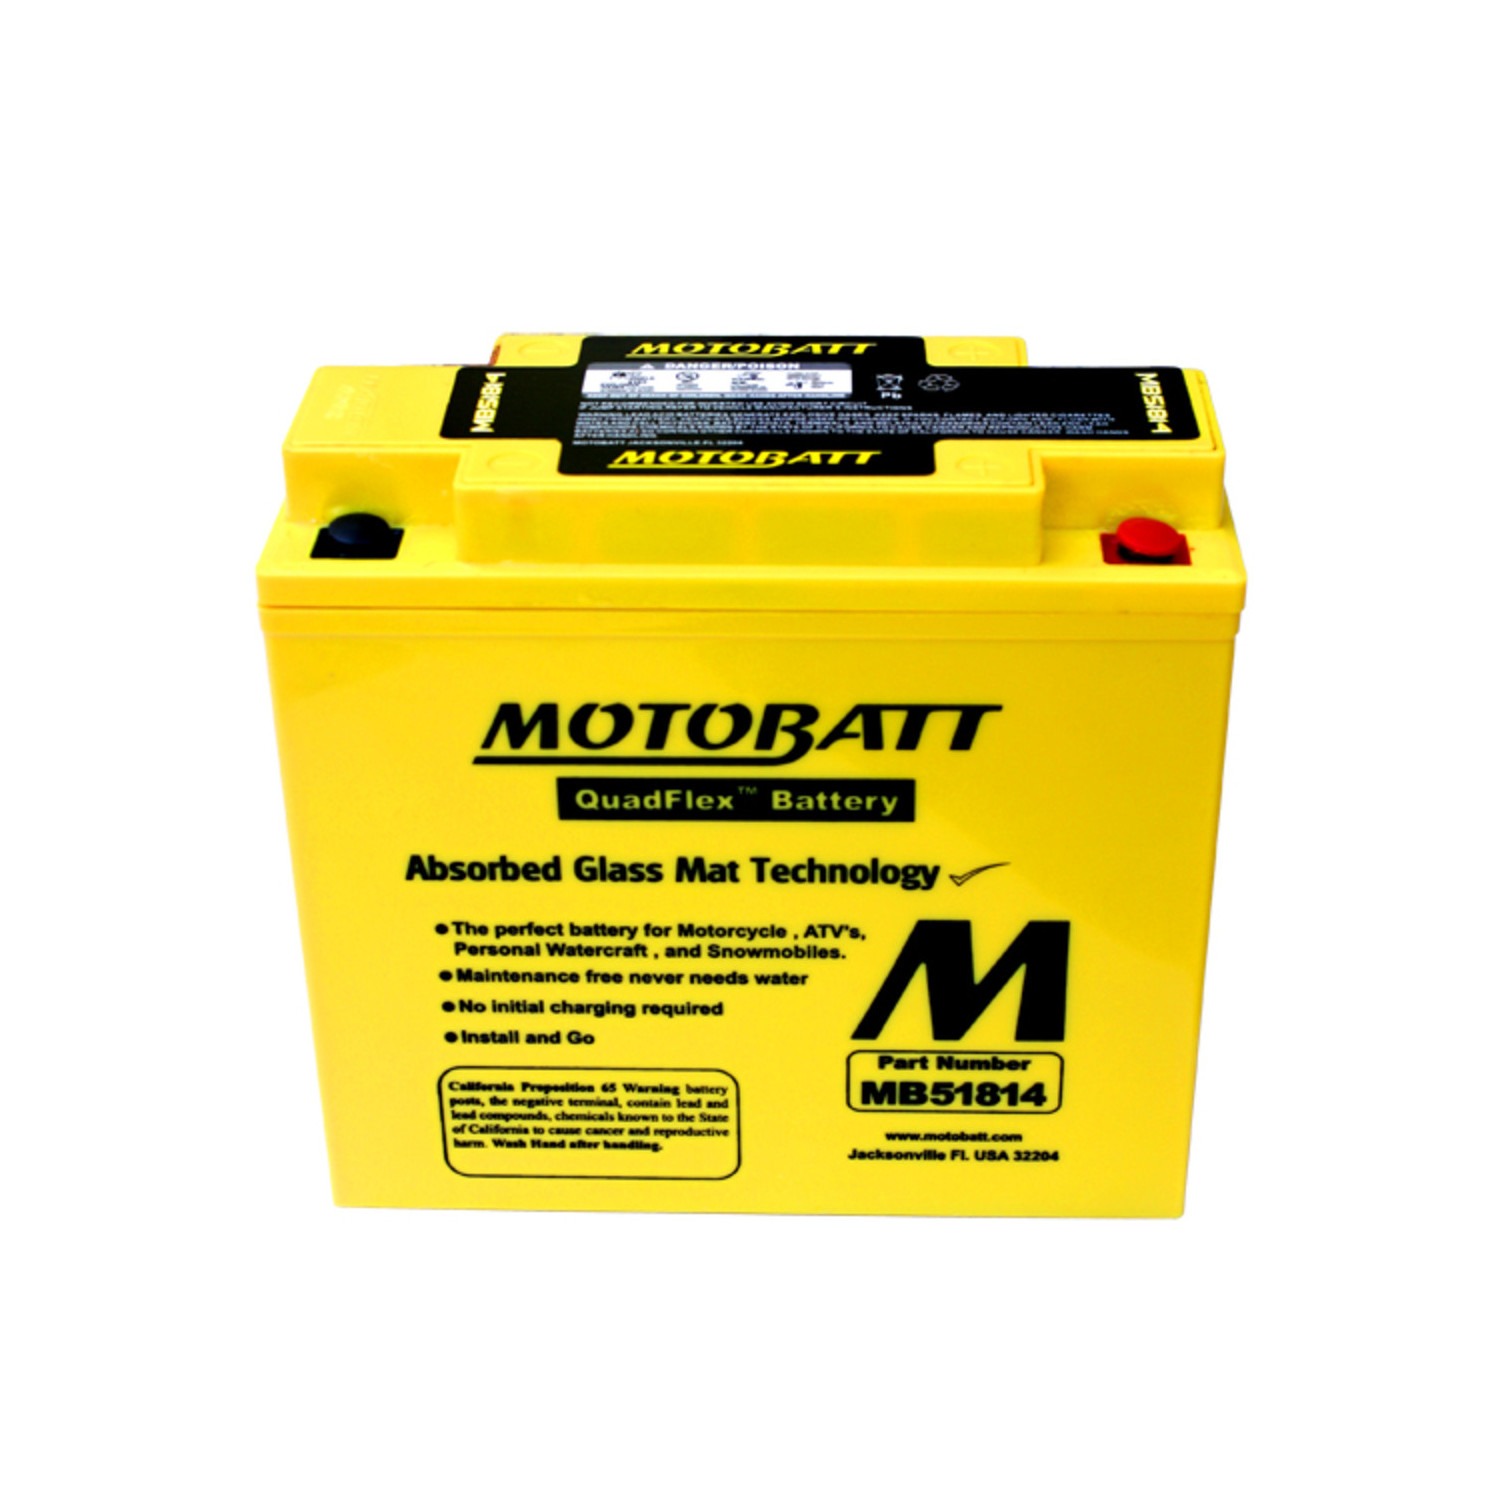 Motobatt – QuadFlex – MB51814 – 22 Ah